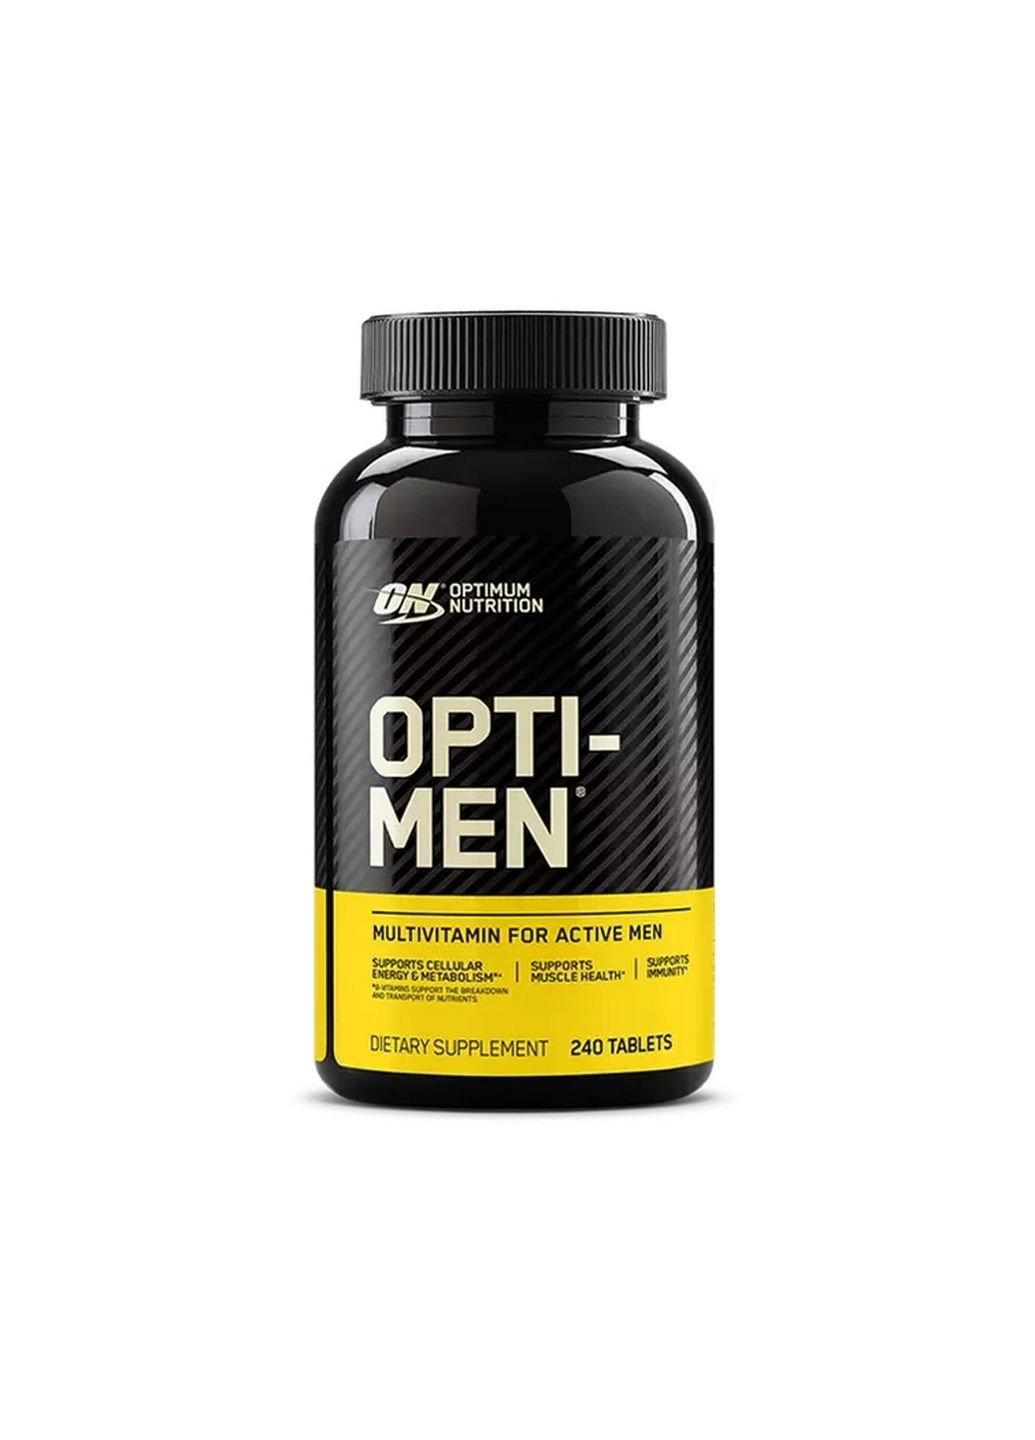 Витамины и минералы Optimum Opti-Men, 240 таблеток Optimum Nutrition (293477134)